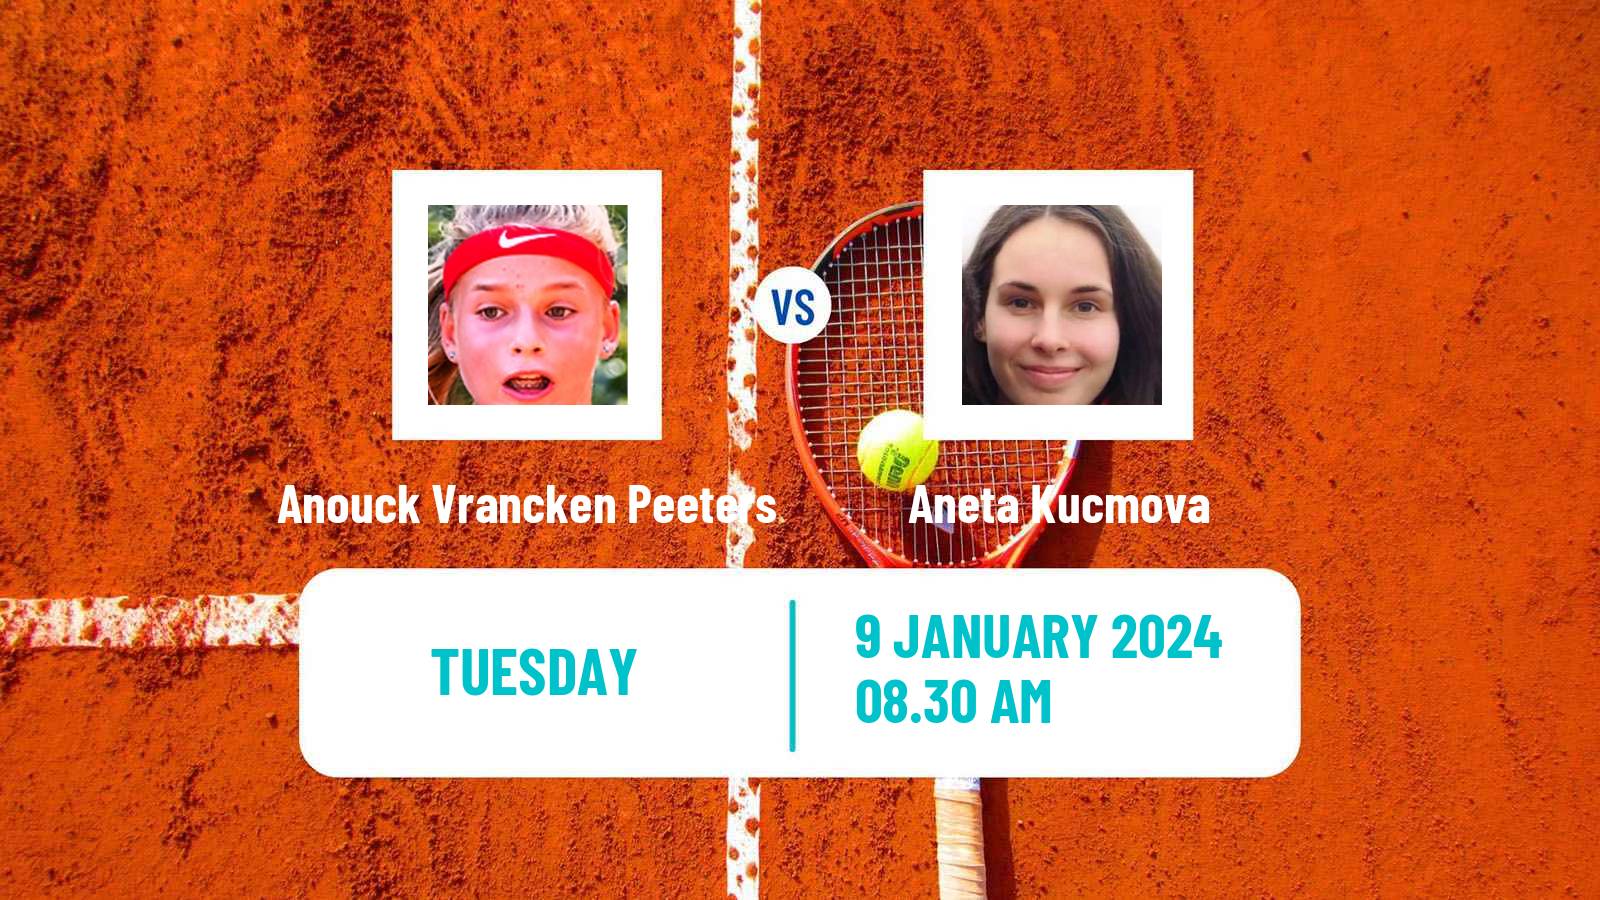 Tennis ITF W15 Esch Alzette Women Anouck Vrancken Peeters - Aneta Kucmova